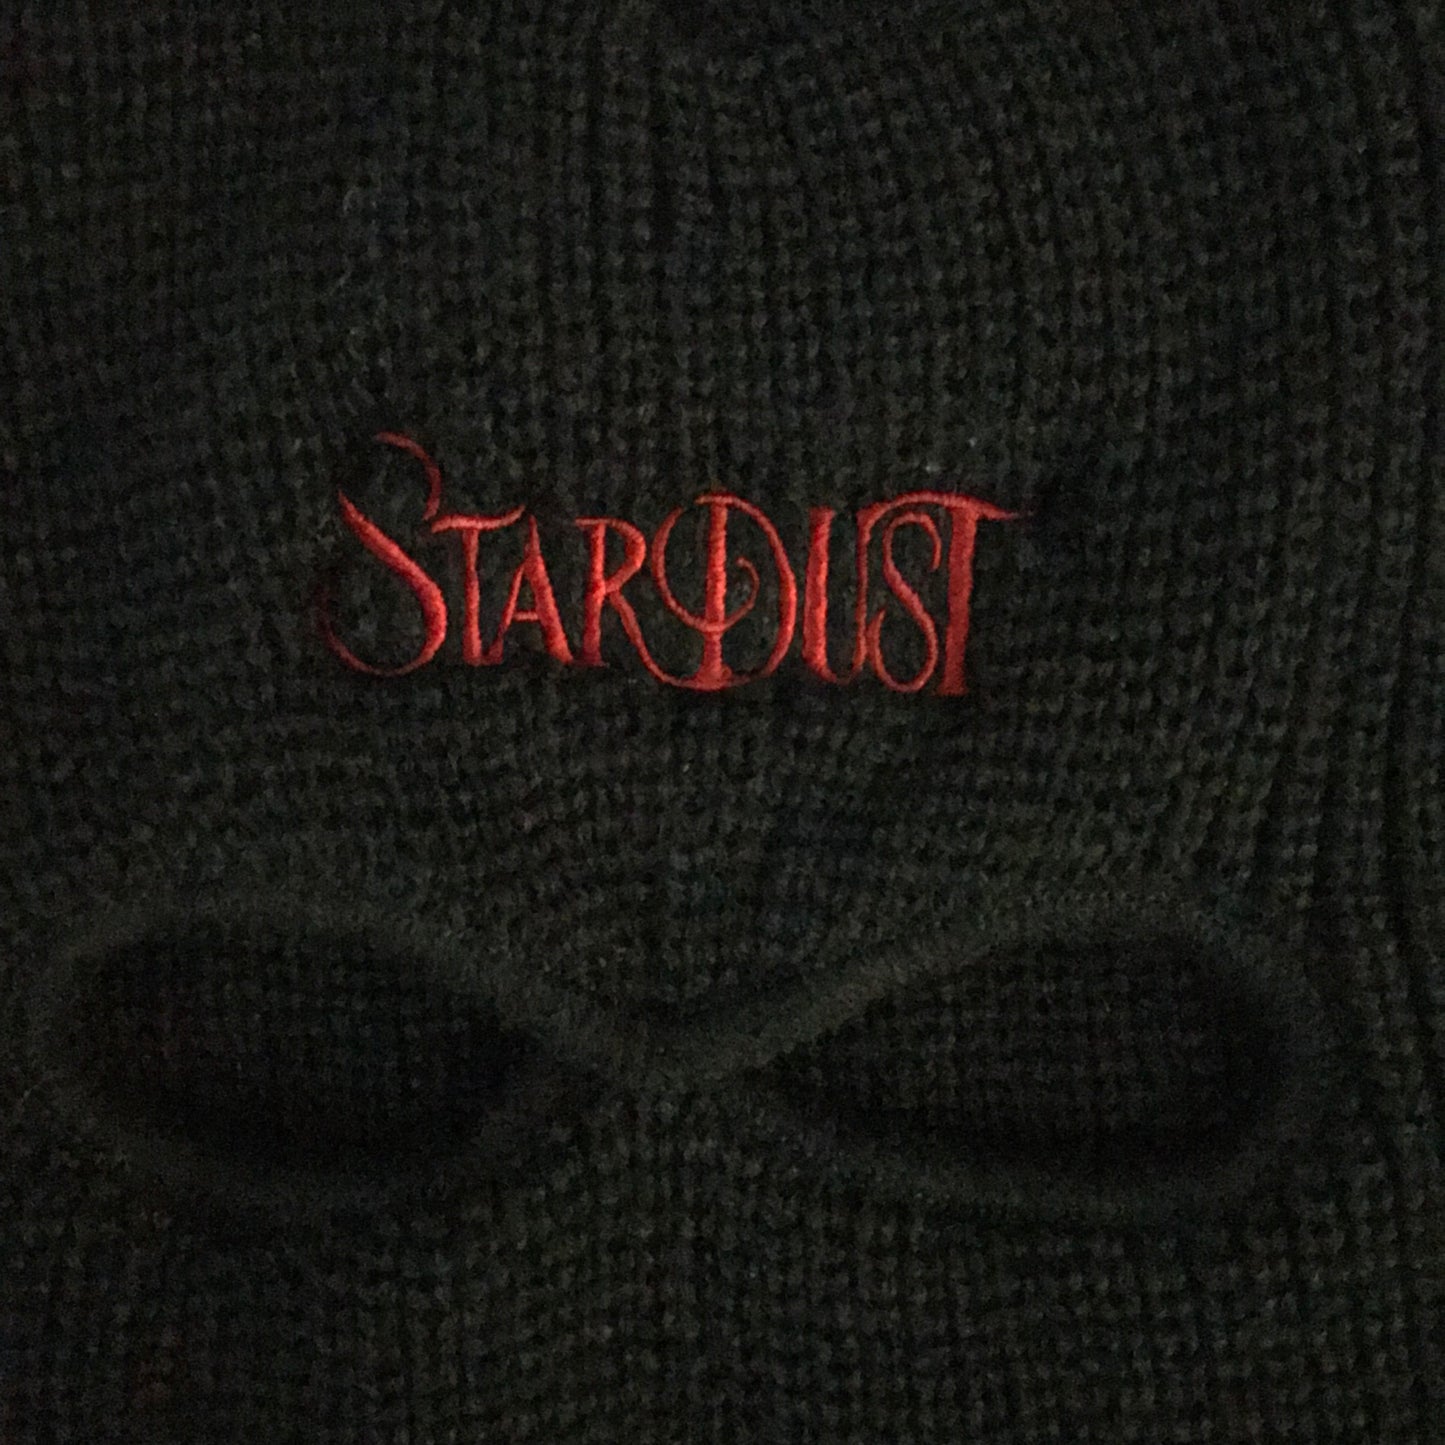 Stardust Skate Shop Wanderlust Ski Mask 001 Black / Red 